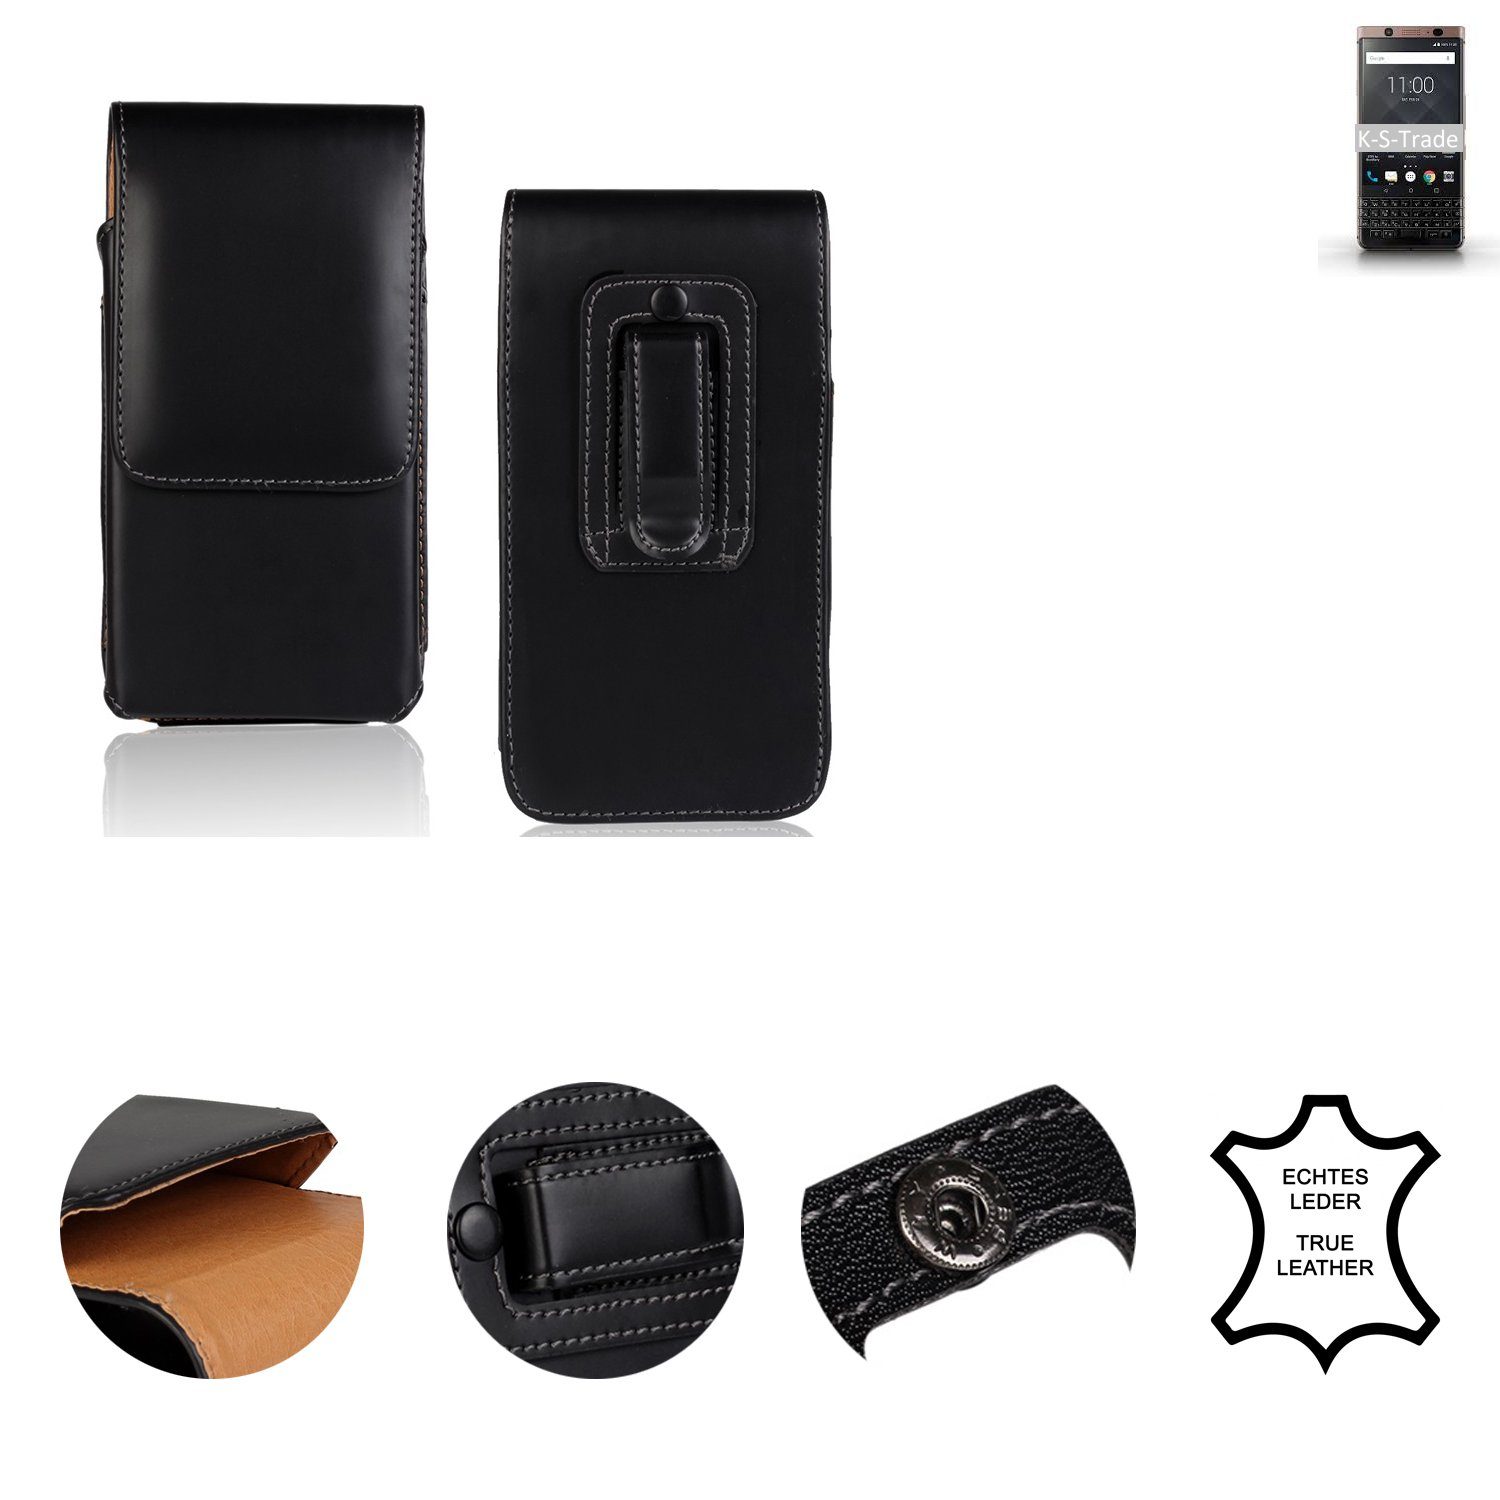 K-S-Trade Handyhülle für Blackberry KEYone Bronze Edition, Holster Gürtel  Tasche Handy-Hülle Schutz-Hülle Handy Hülle